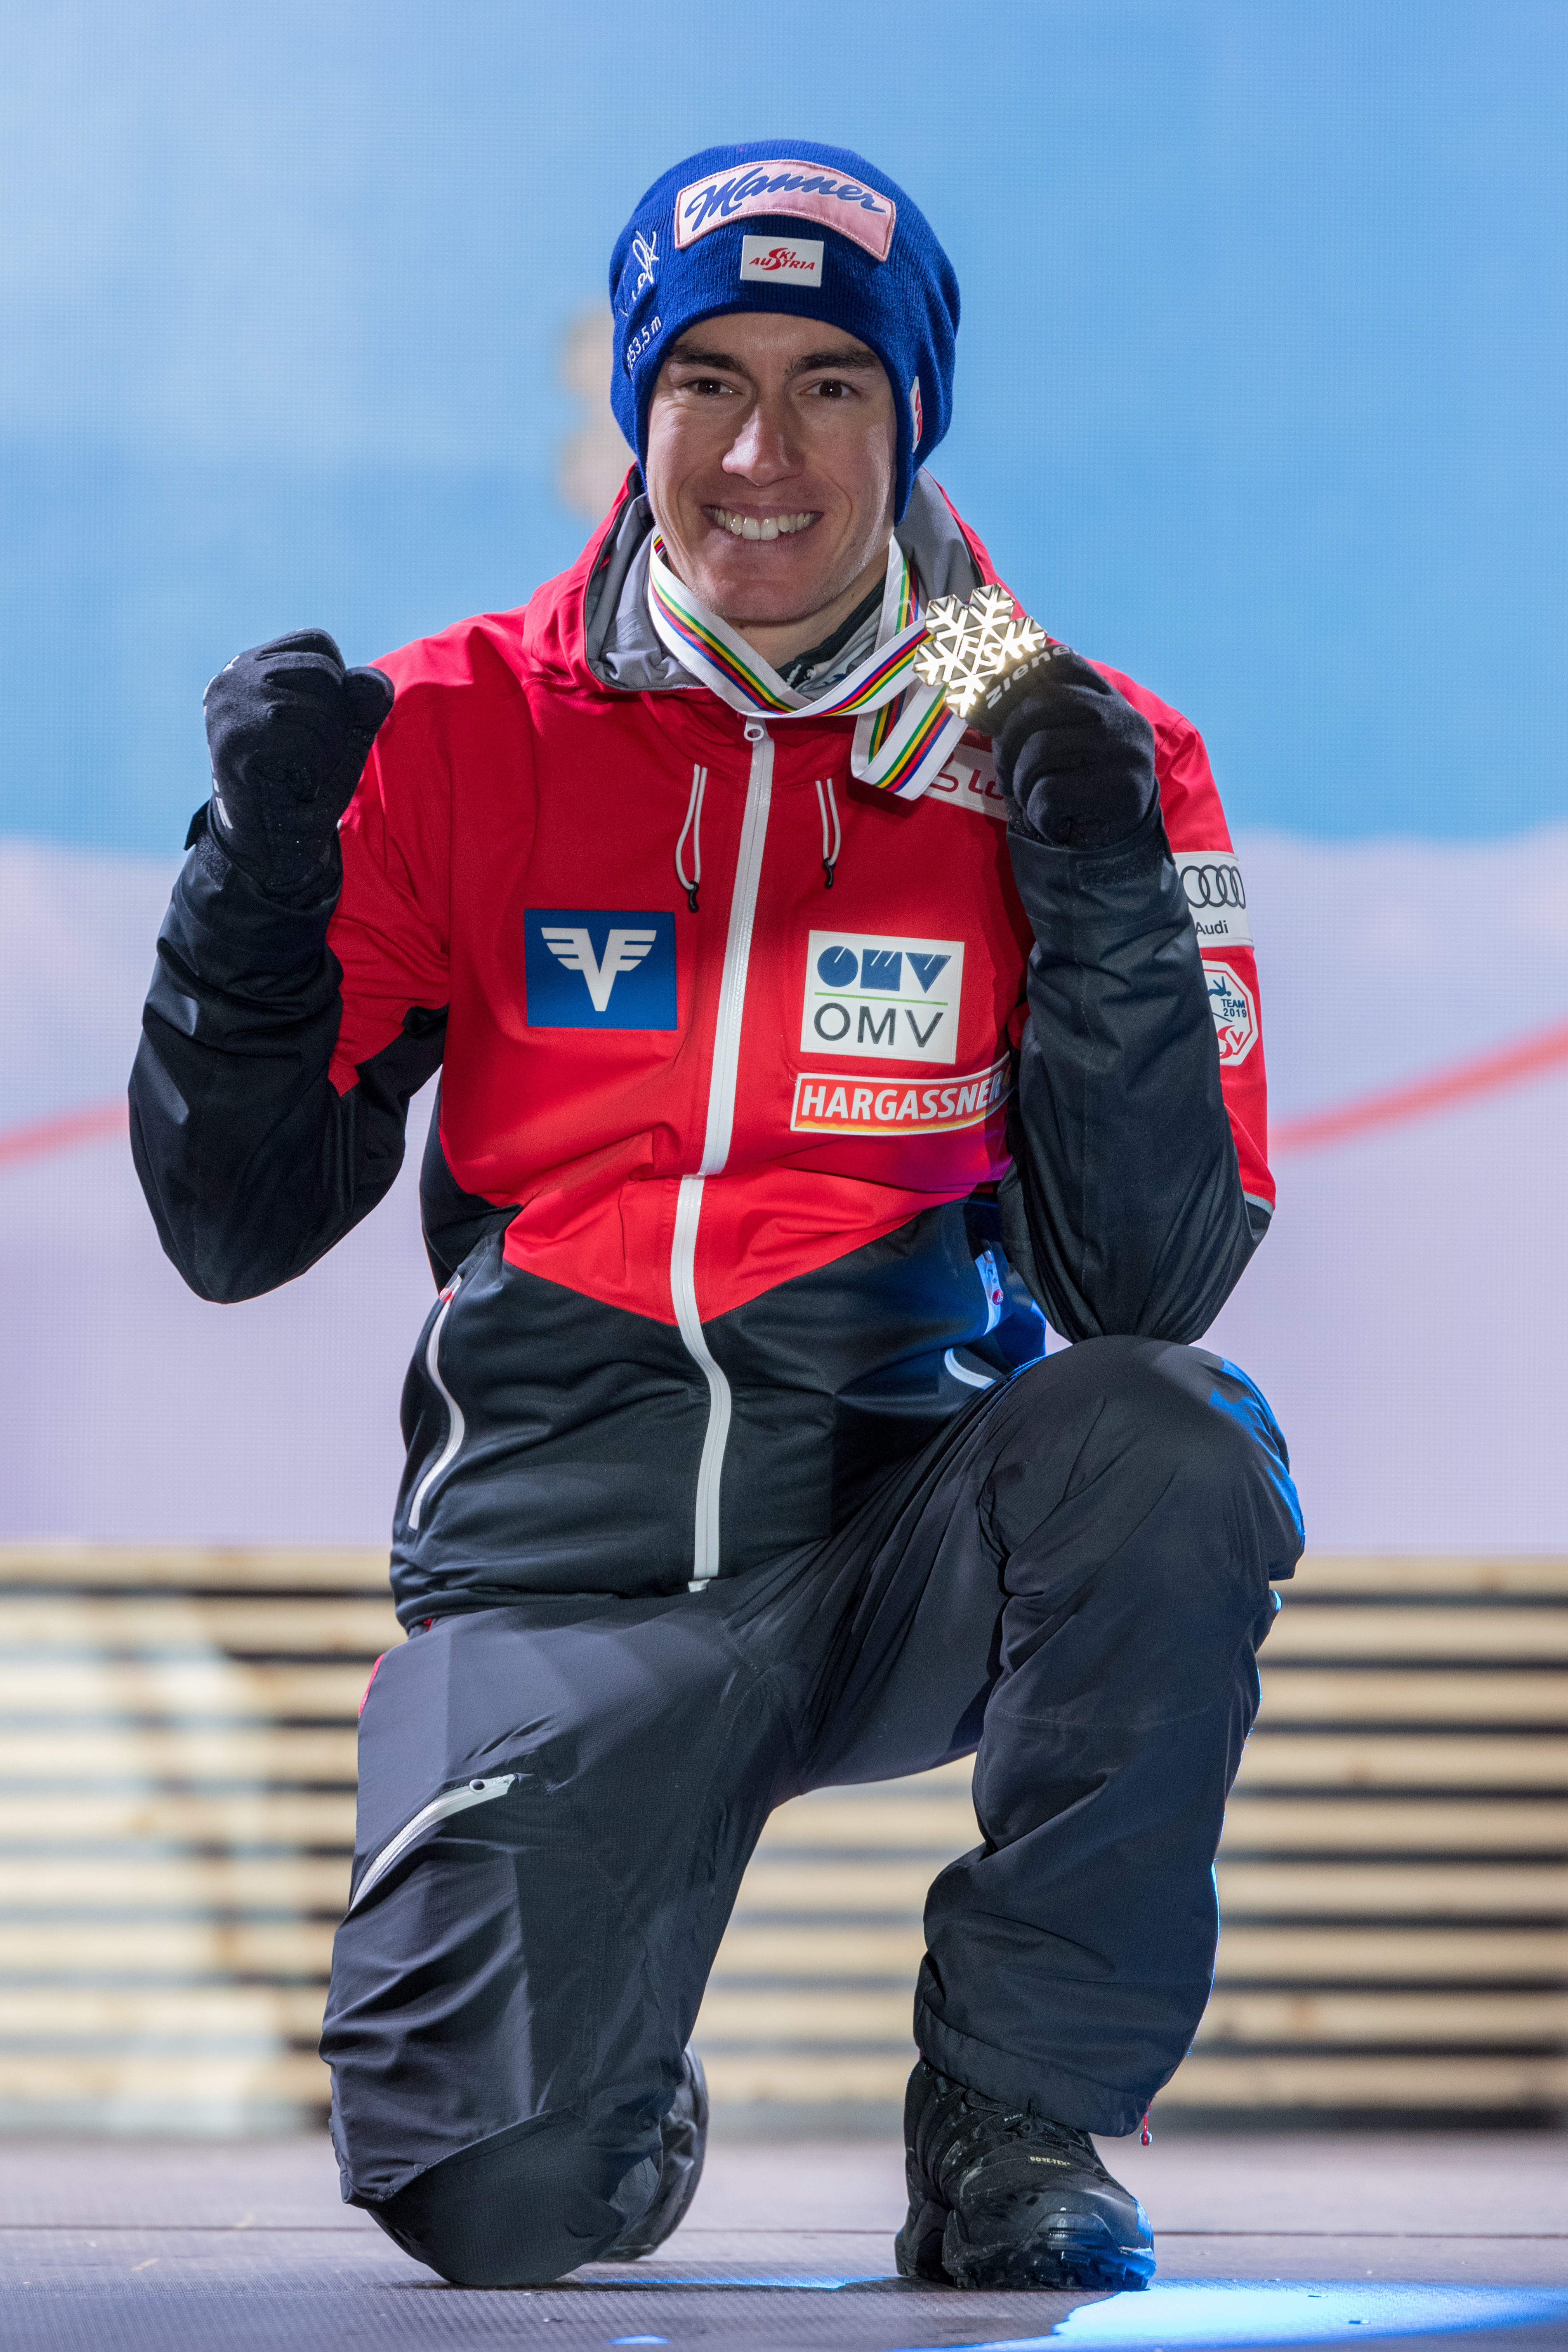 Stefan Kraft